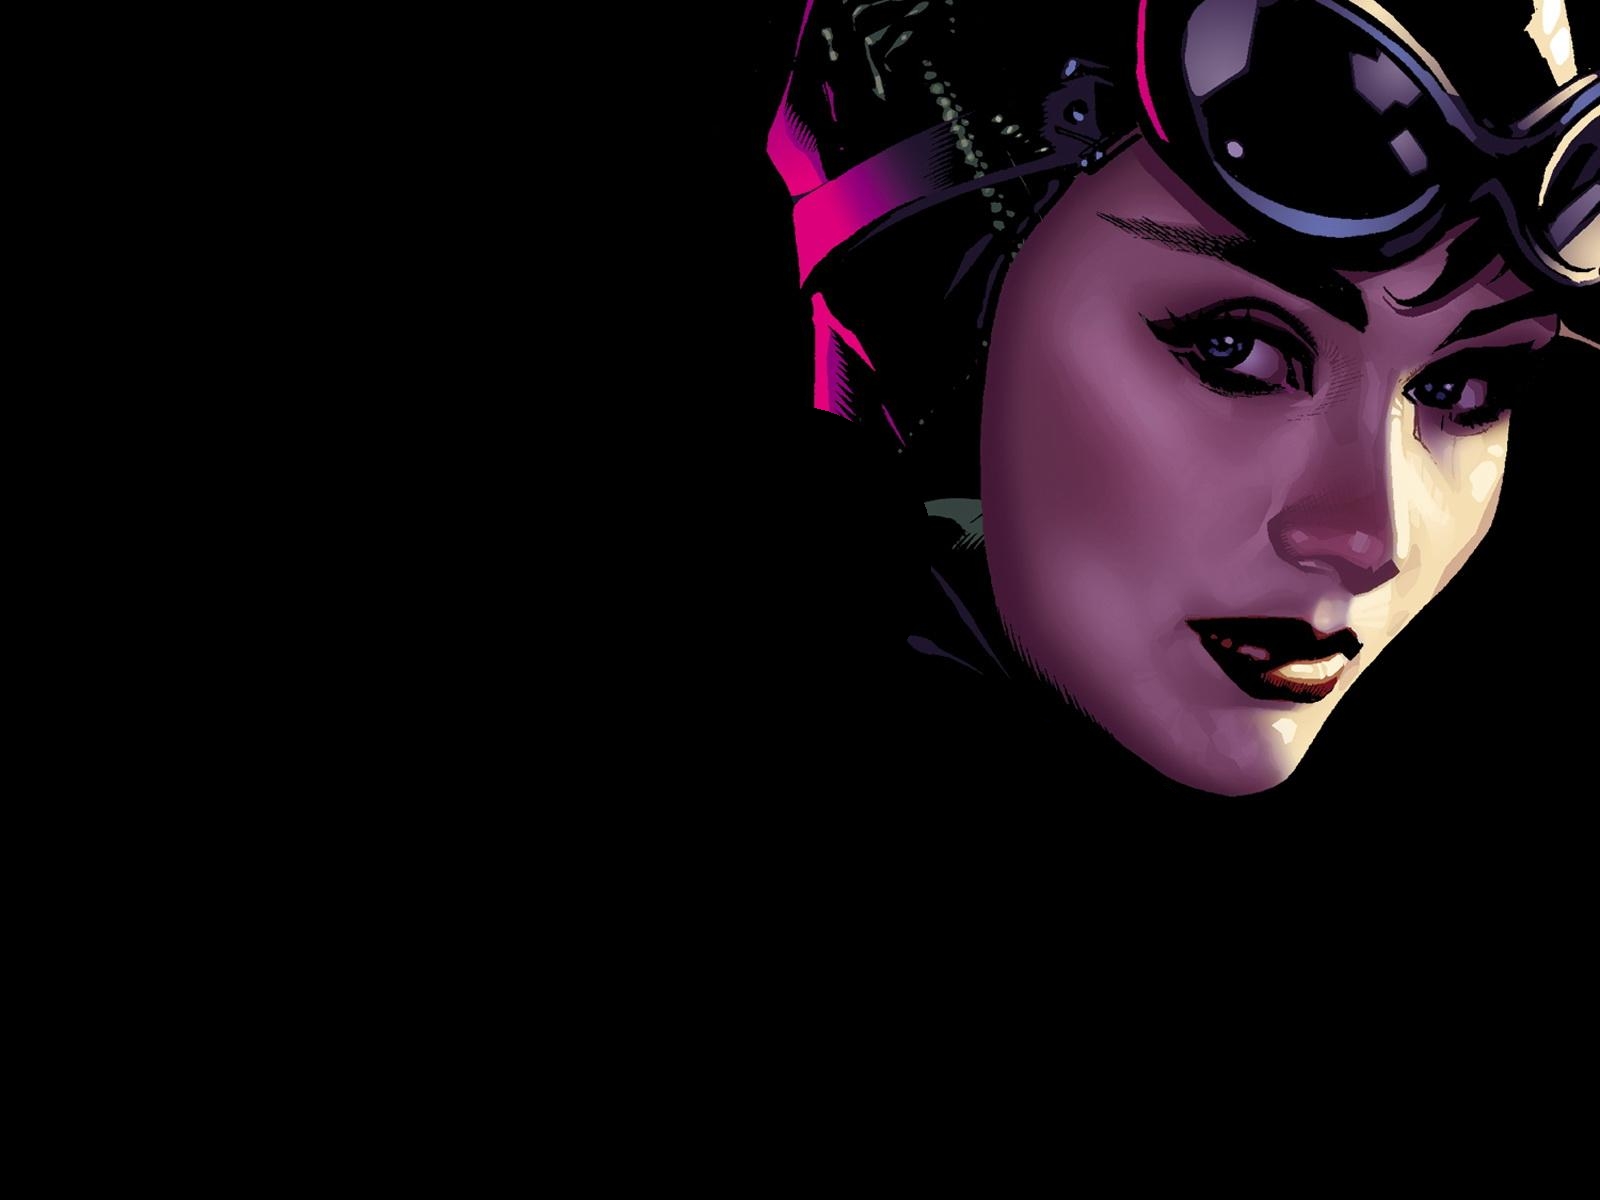 Catwoman Puter Wallpaper Desktop Background